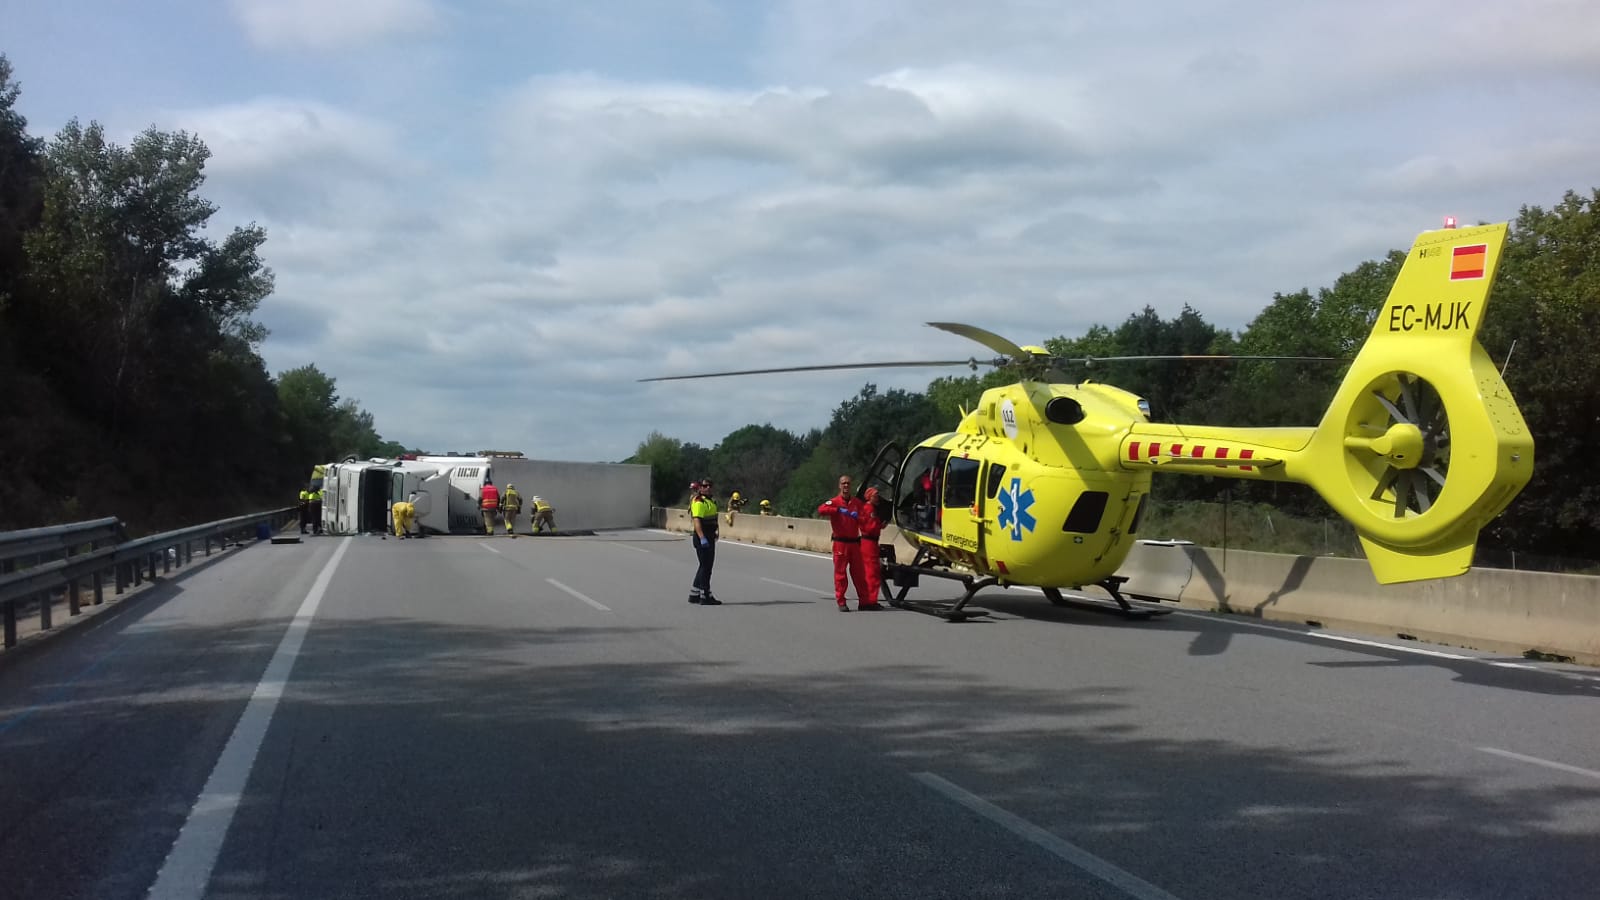 S'ha mobilitzat un helicòpter que ha traslladat al xofer a l'hospital. Al fons, el camió de fruita bolcat